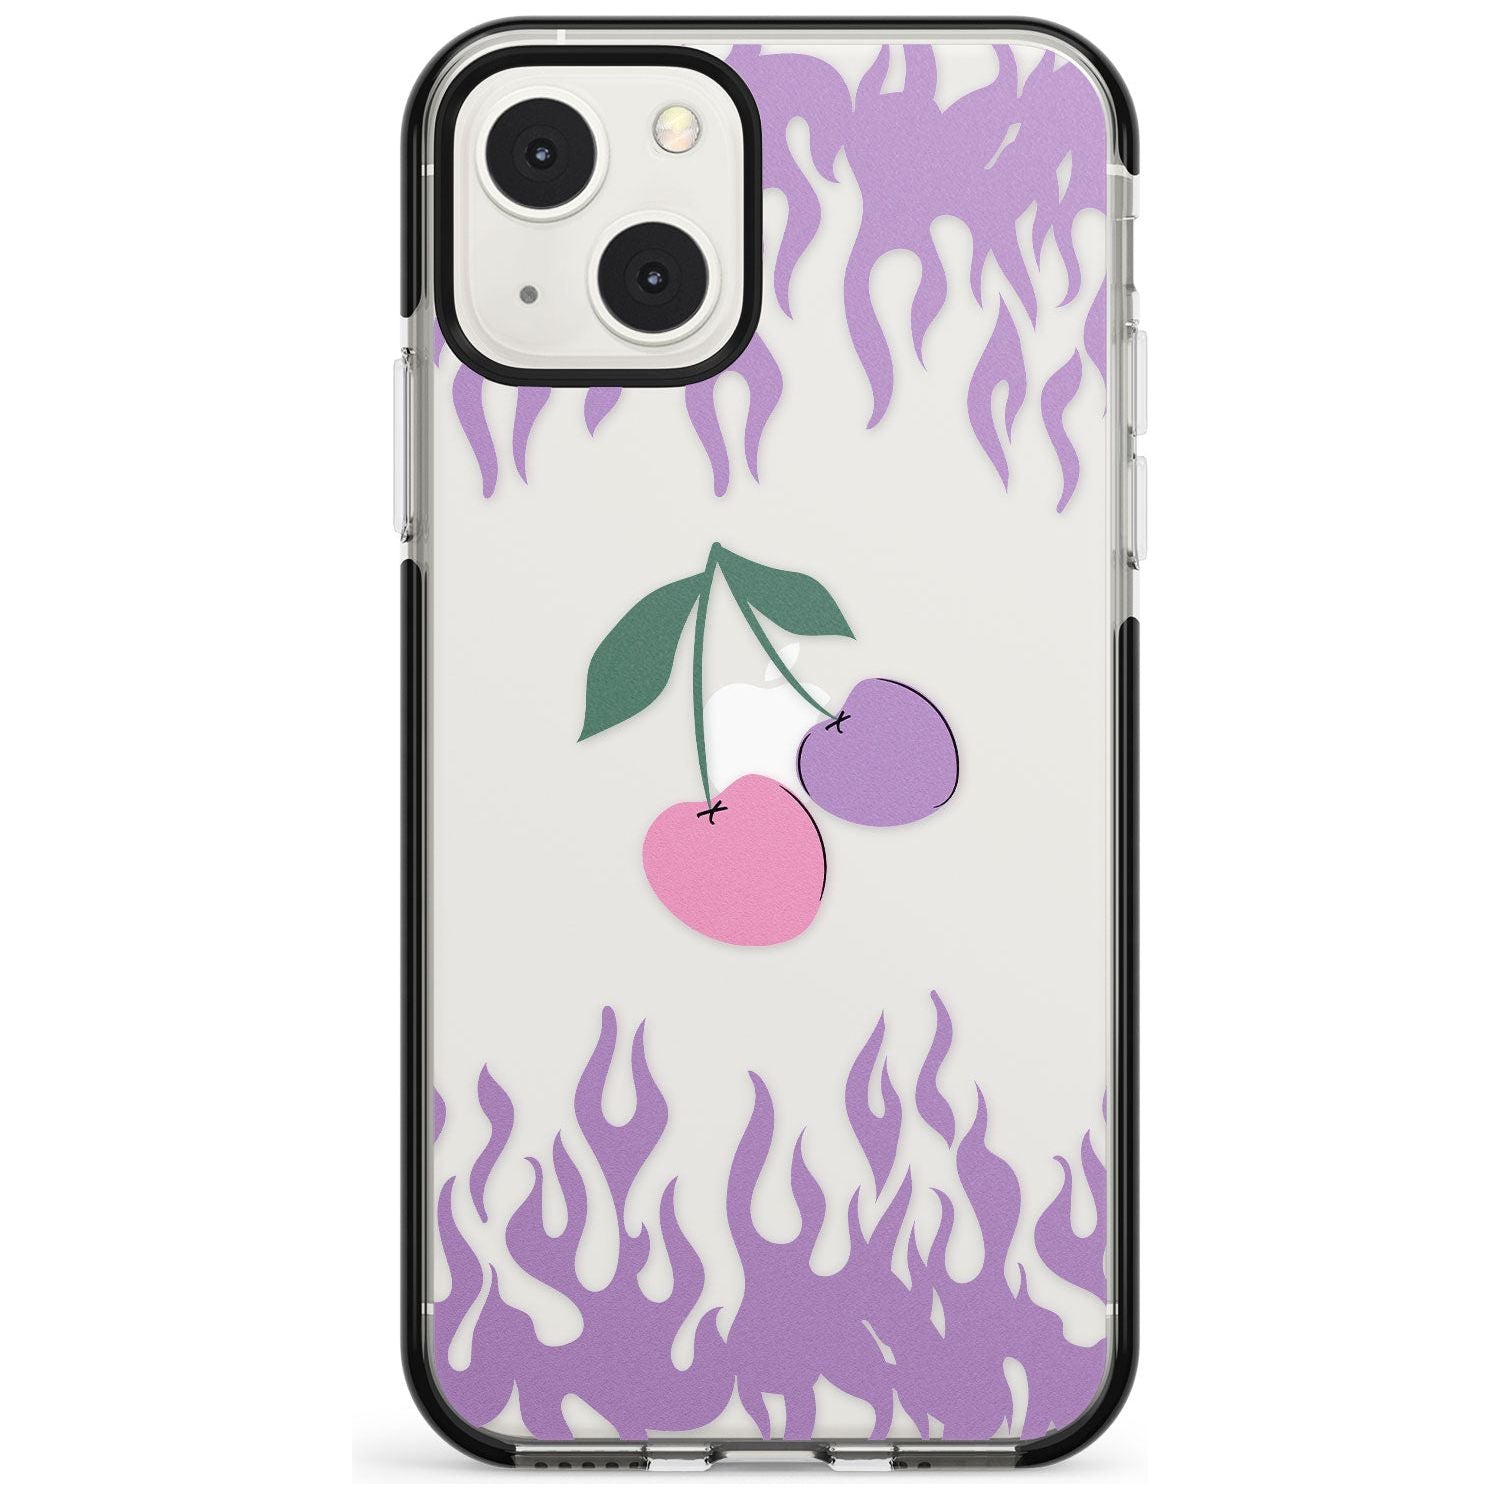 Cherries n' Flames Black Impact Phone Case for iPhone 13 & 13 Mini